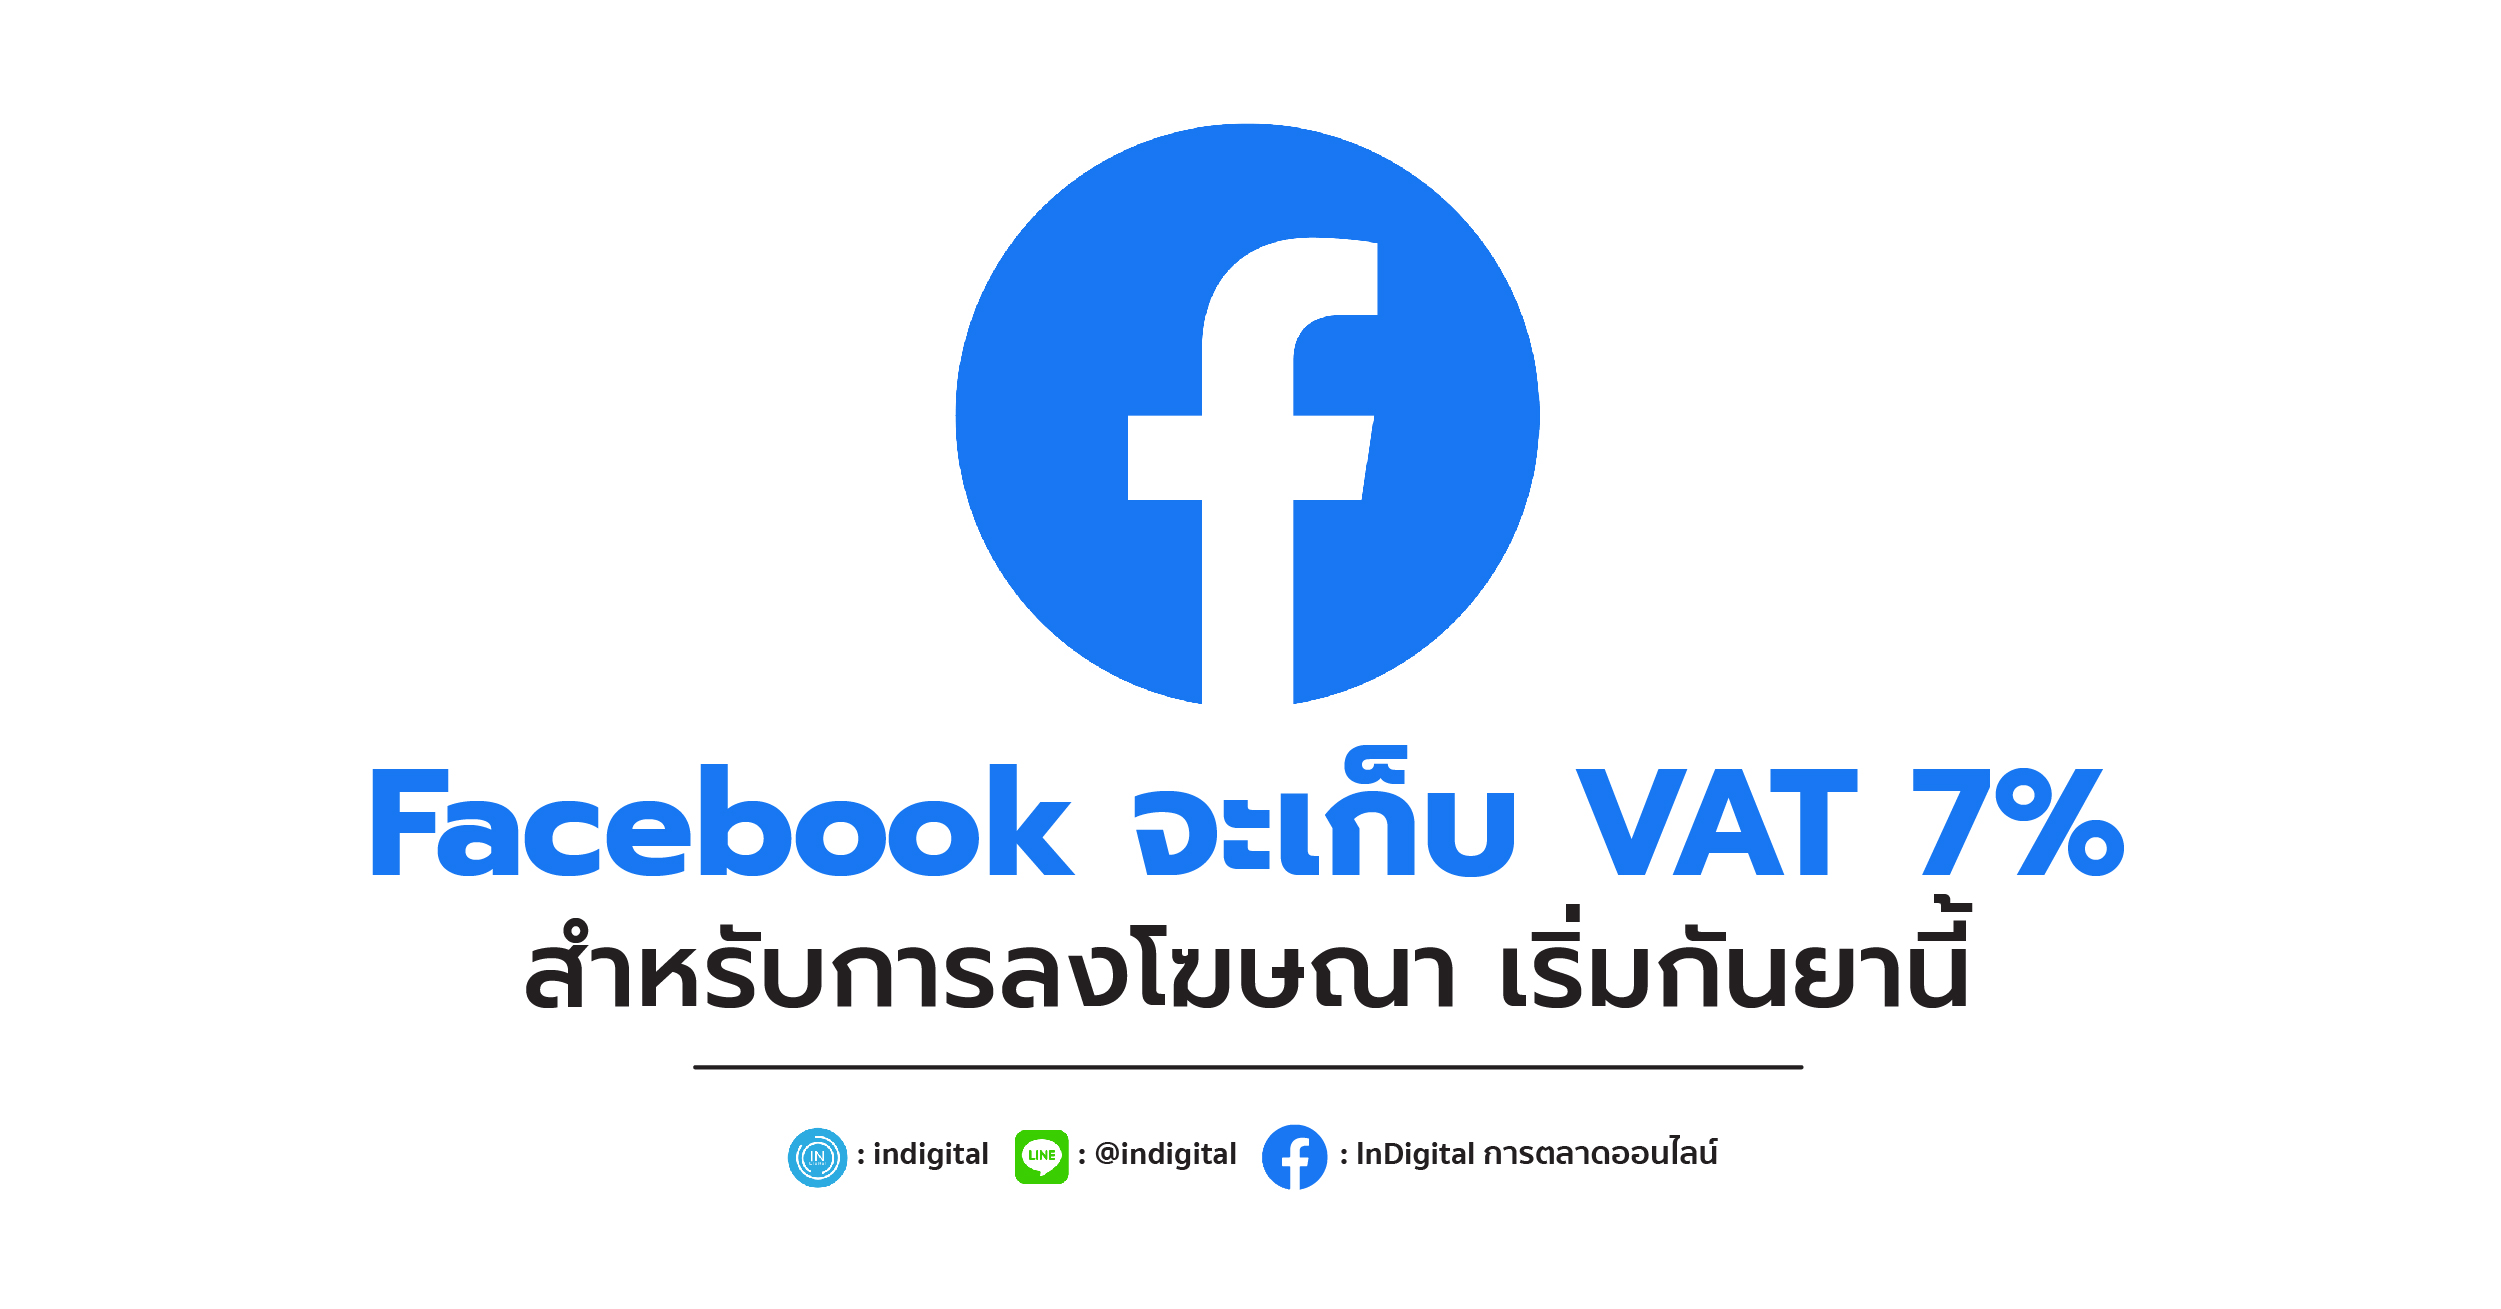 Facebook จะเก็บ VAT 7% สำหรับการลงโฆษณา เริ่มกันยานี้